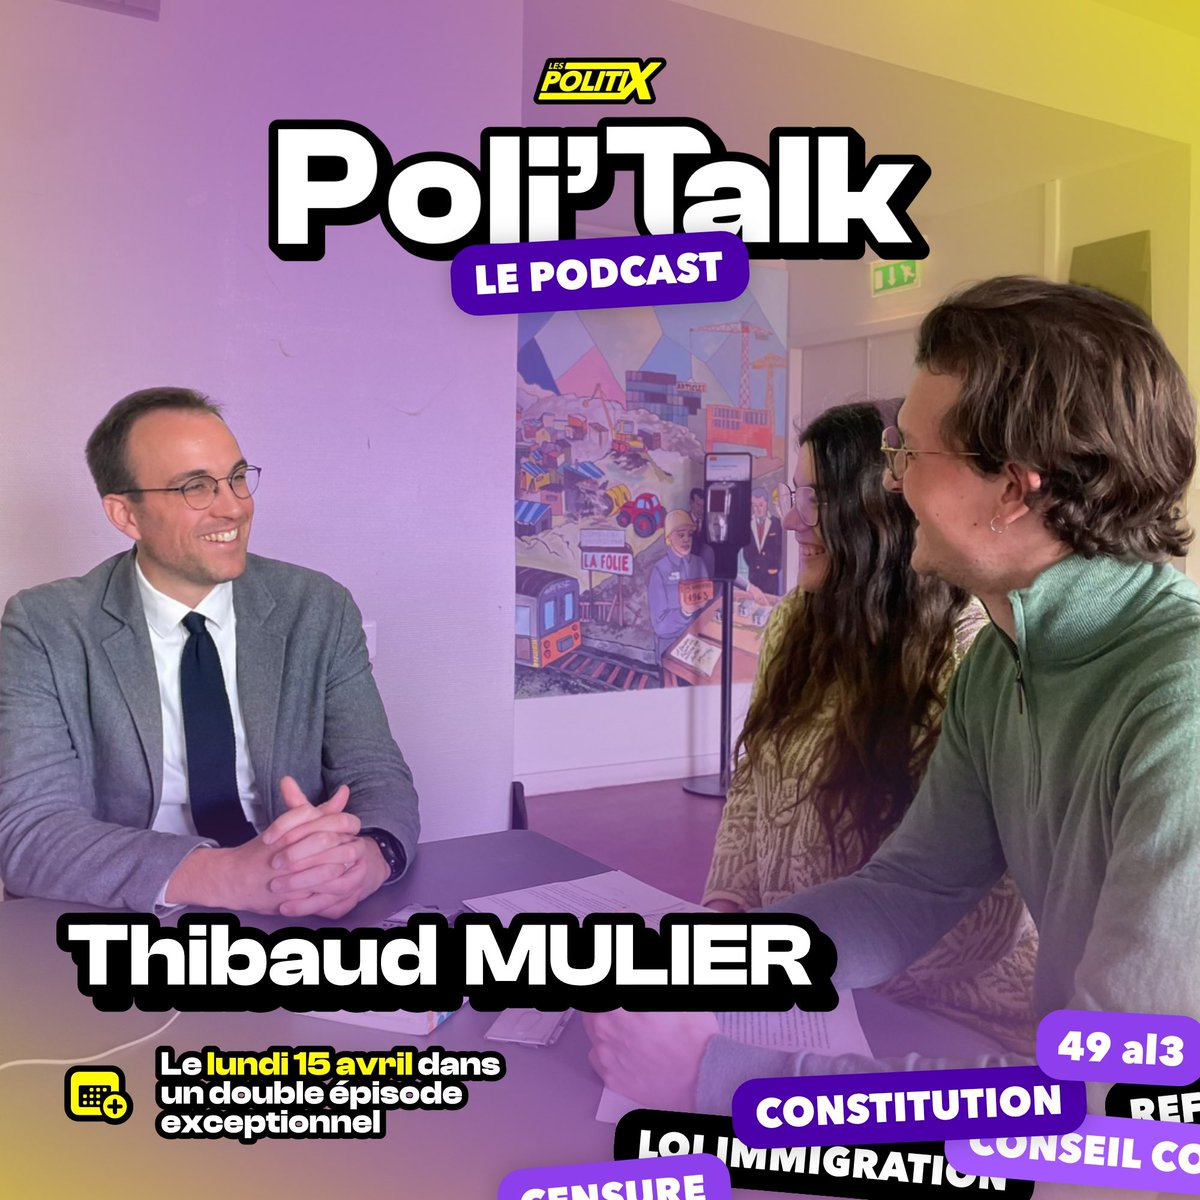 🟣 Surprise ! Le prochain épisode de Poli’Talk sort dans une semaine. On y recevra le juriste @thibaudmulier pour un double épisode exceptionnel, afin de finir la saison 2 de Poli’Talk en beauté ! ✨